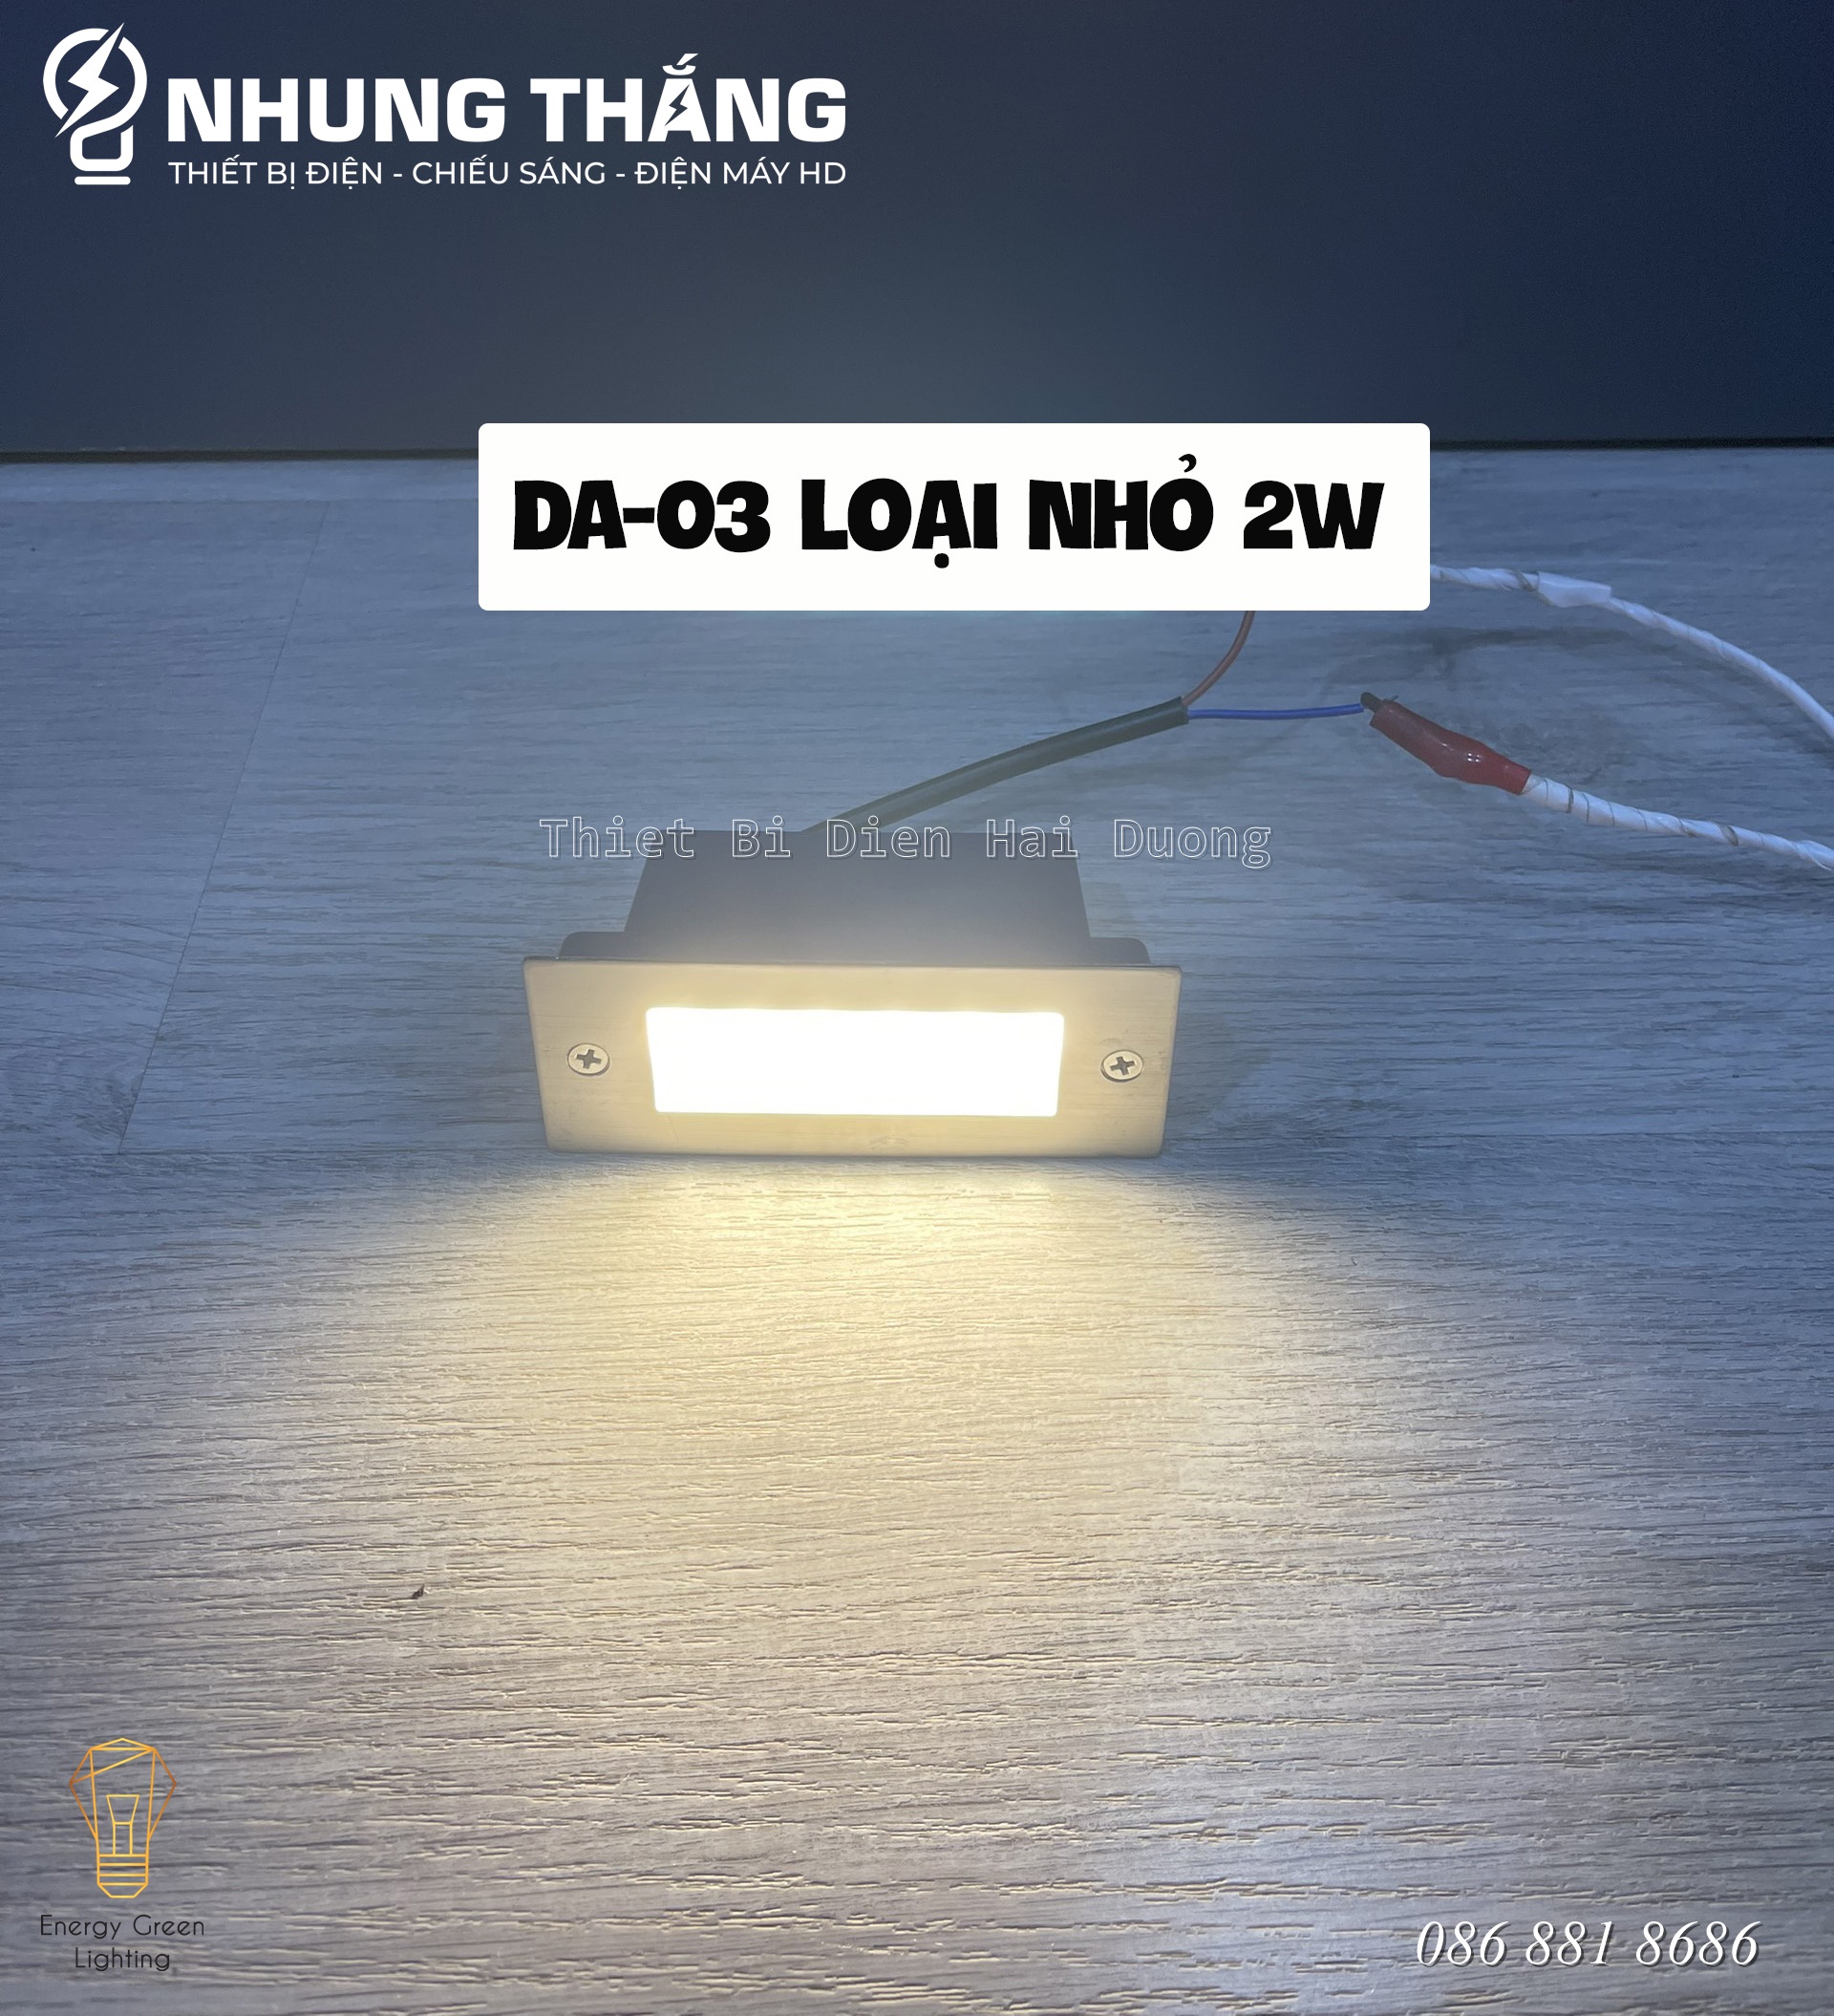 Đèn LED Âm Tường,Chân Cầu Thang DA-03 - Chống Nước IP65 - Mặt Nhôm Cao Cấp - Có Video